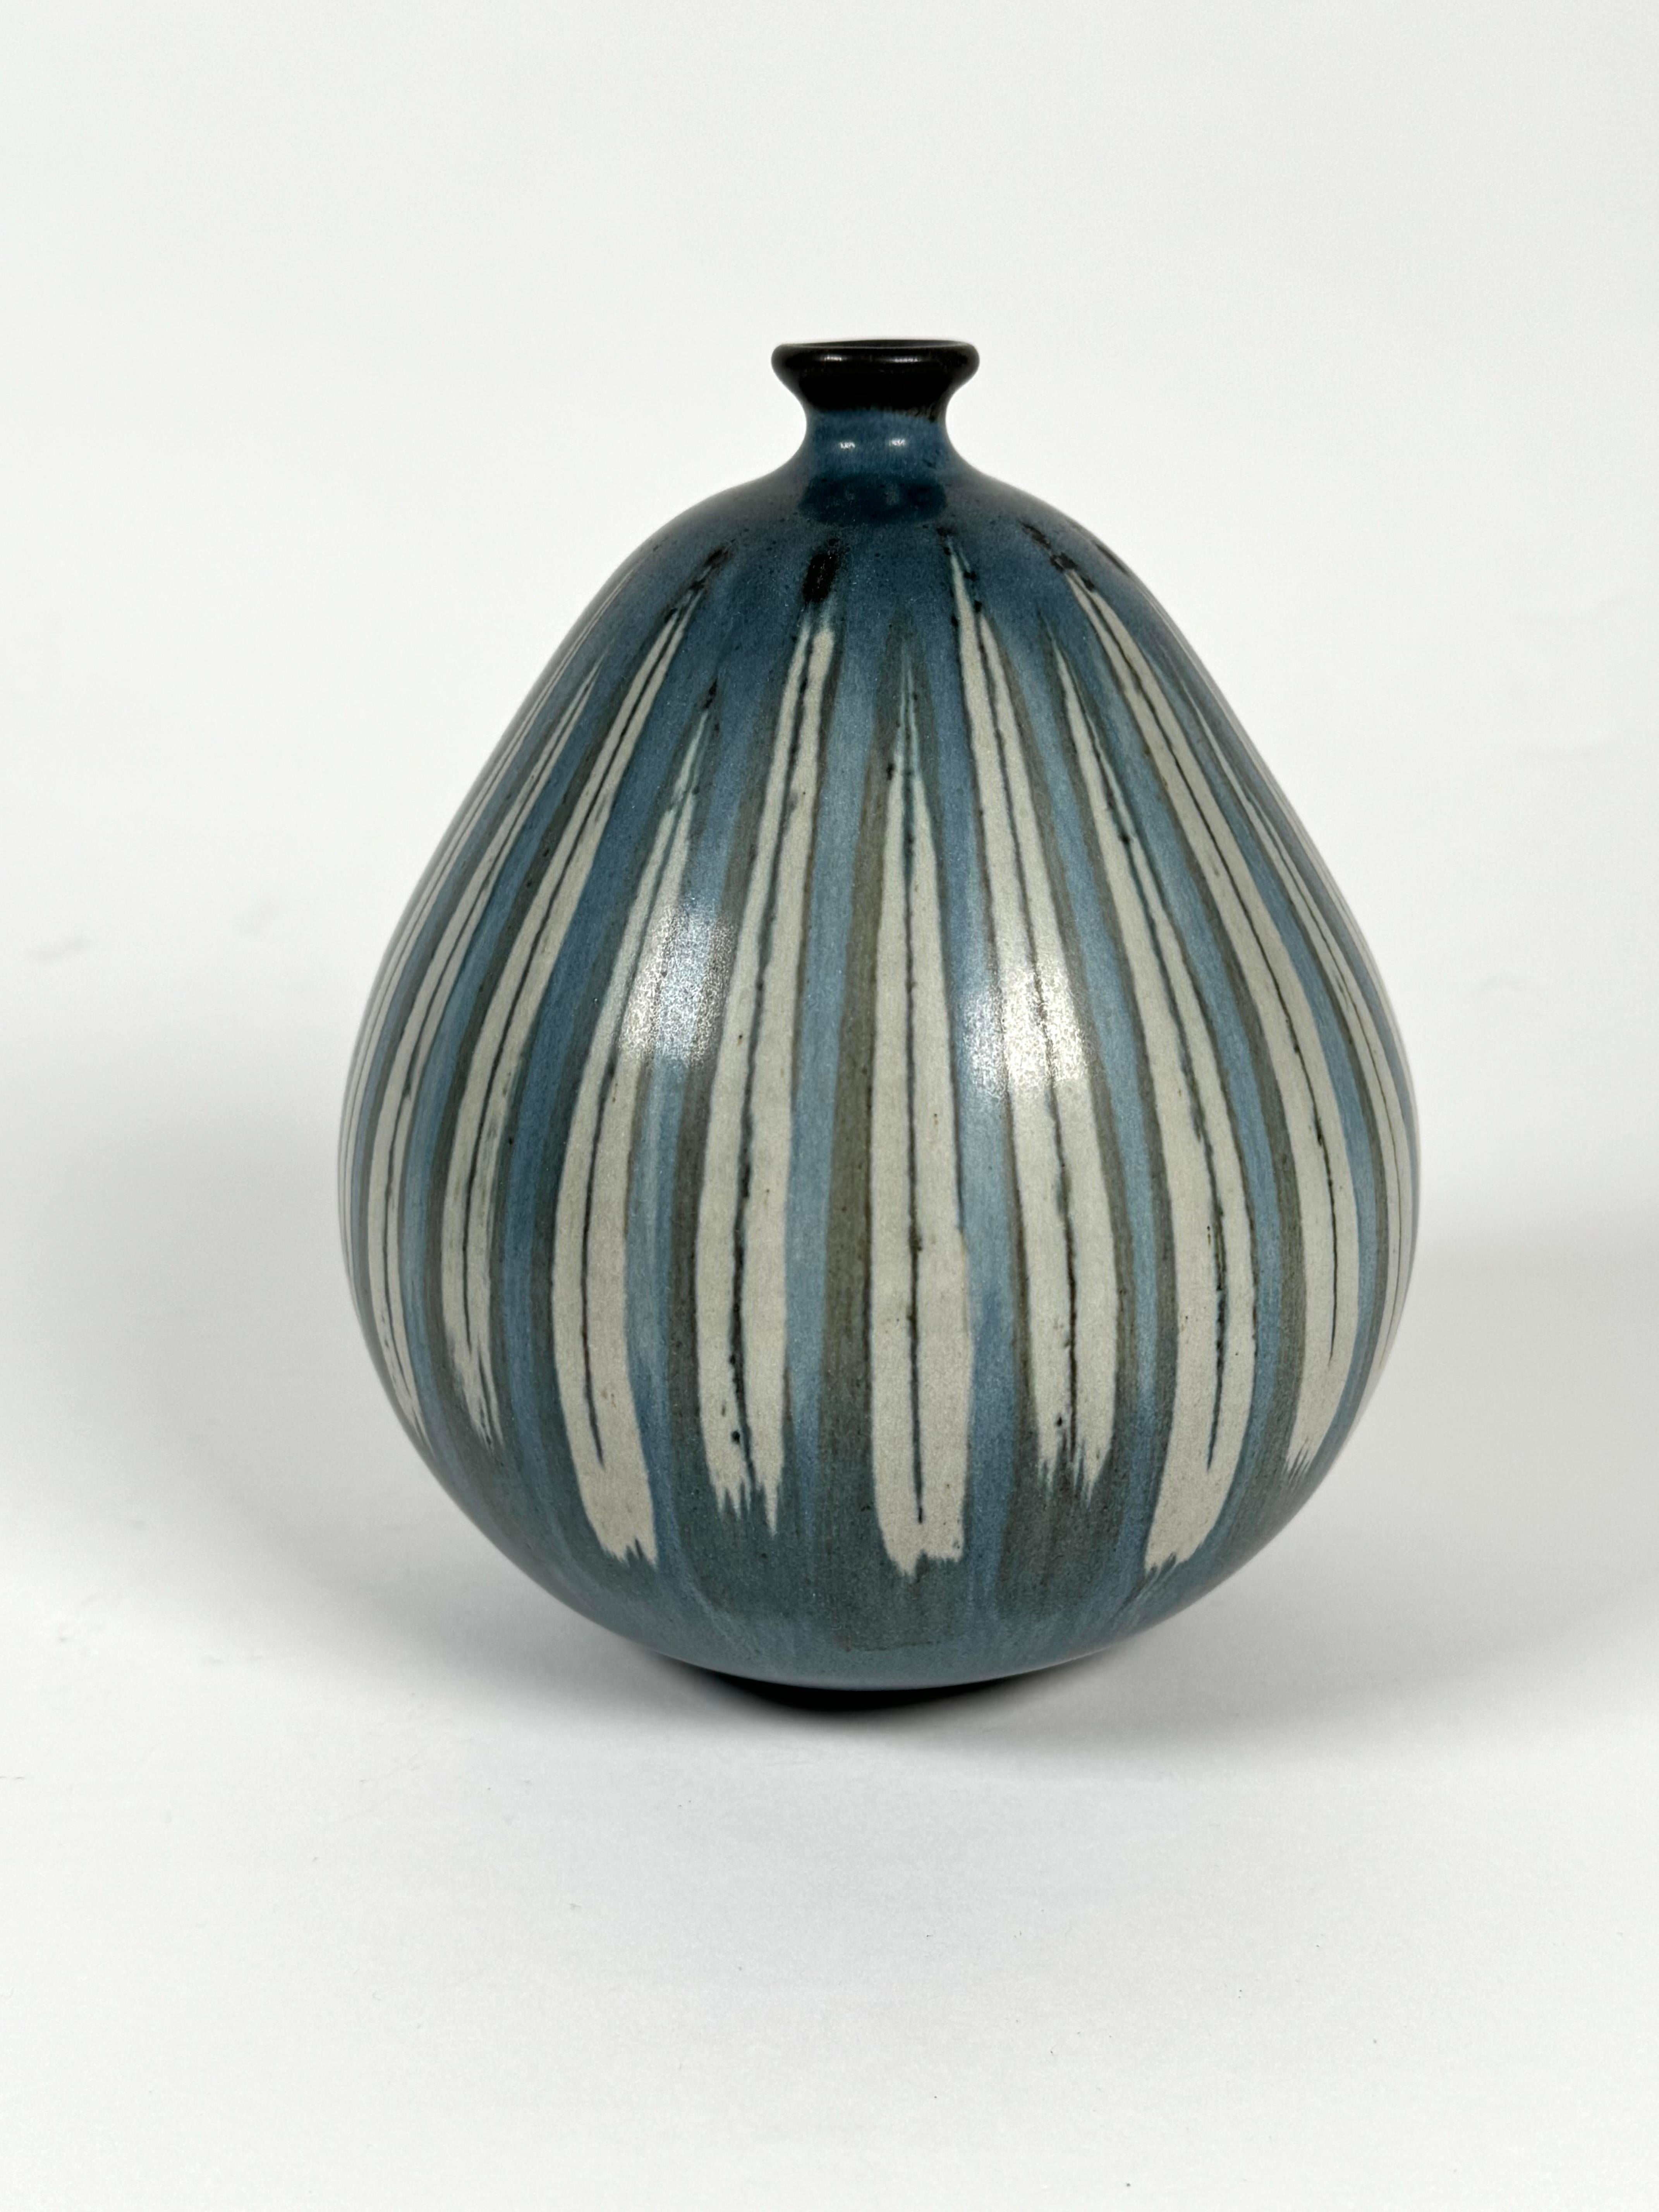 Rupert Deese (1924-2010), artiste céramiste de studio californien. Vase bulbeux en céramique avec des tons bleus et des glaçures à motifs rayés. Deese était un céramiste réputé qui a remporté de nombreux prix au cours de sa carrière.